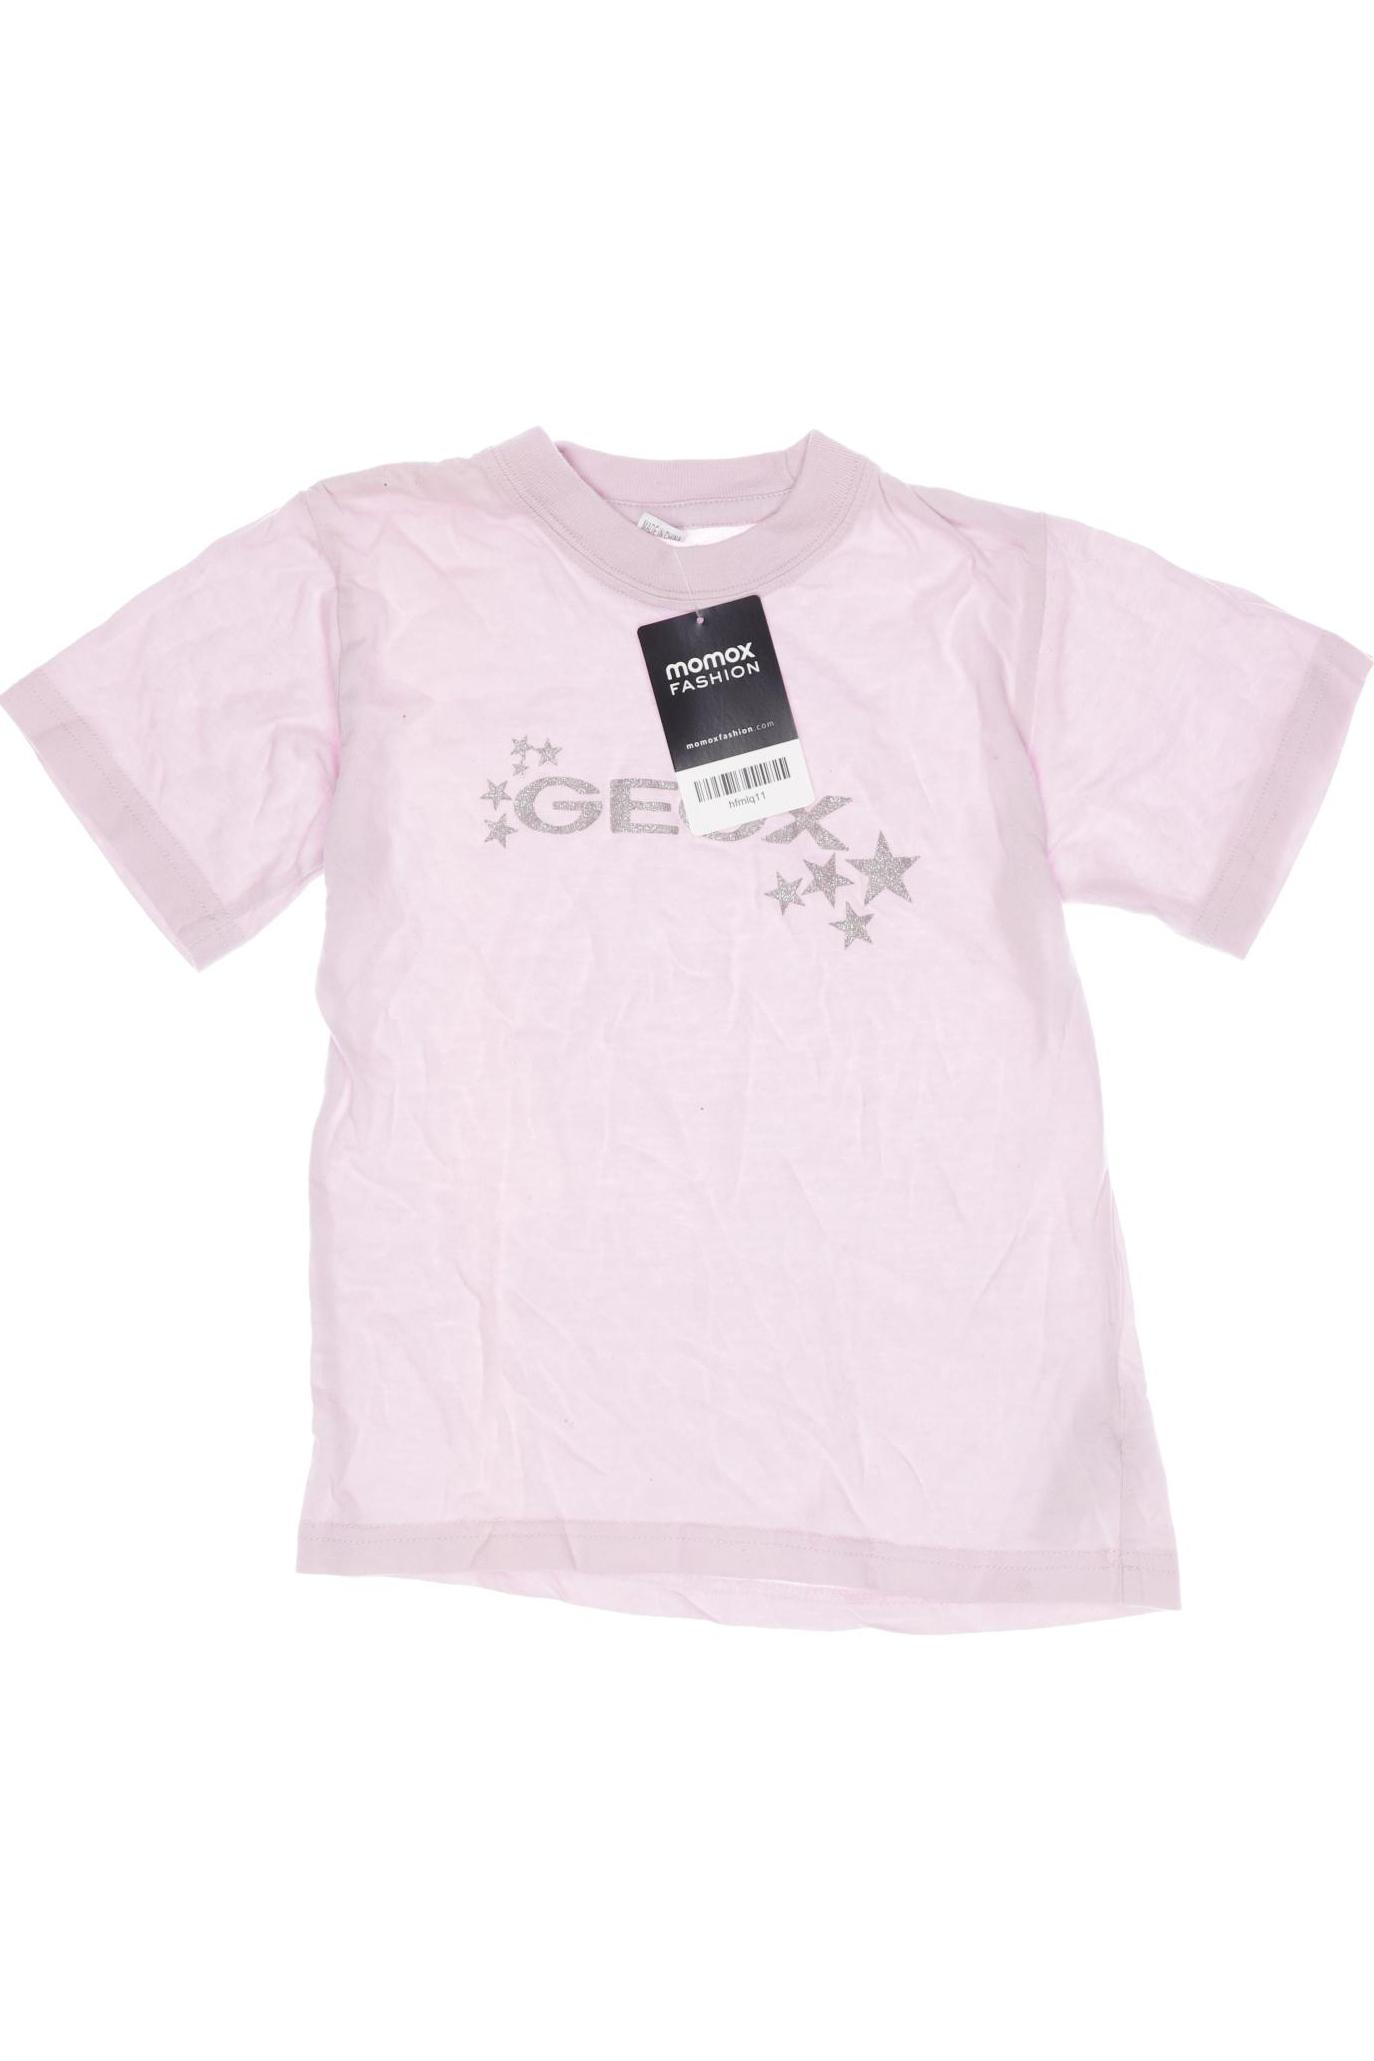 Geox Mädchen T-Shirt, pink von Geox